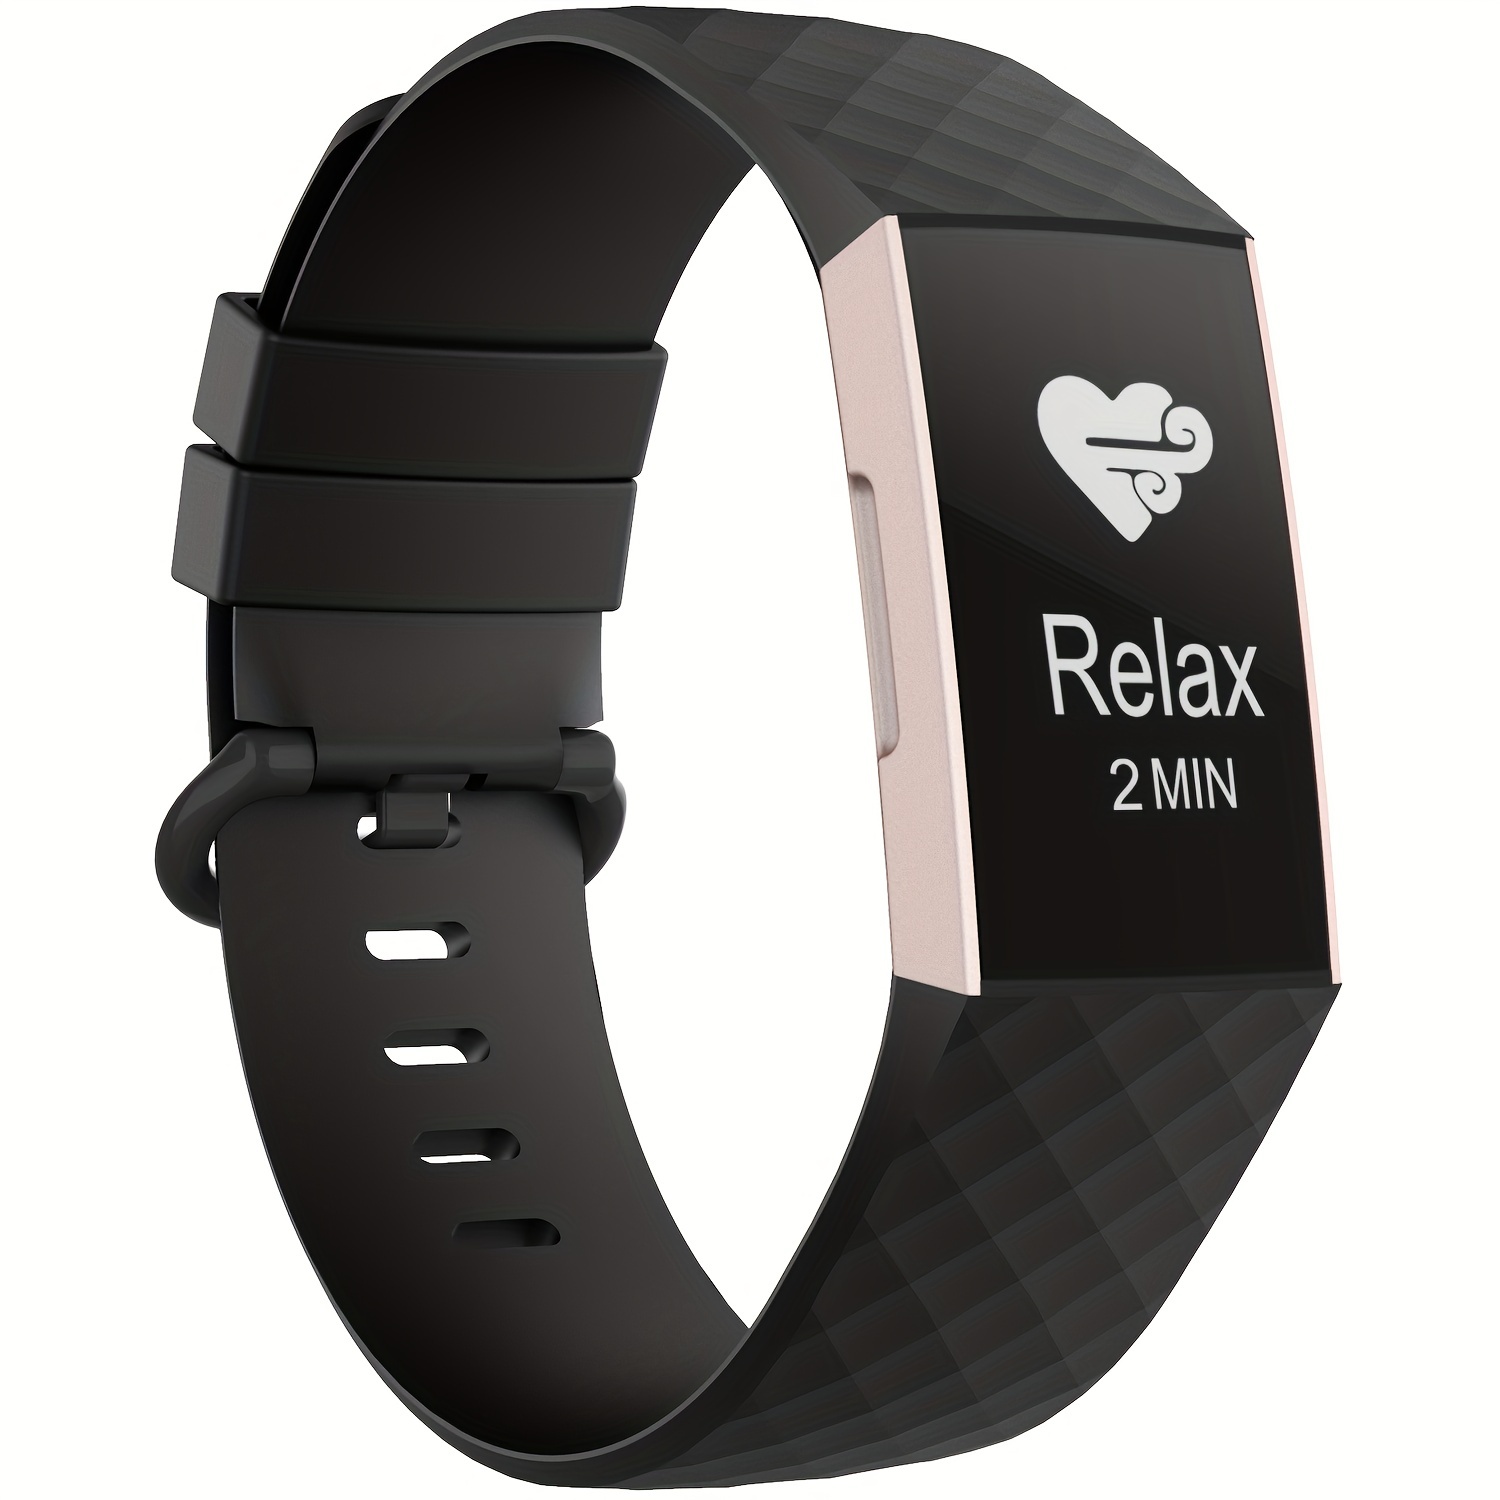 Bracelet de rechange en Silicone souple pour Fitbit ace 2, montre